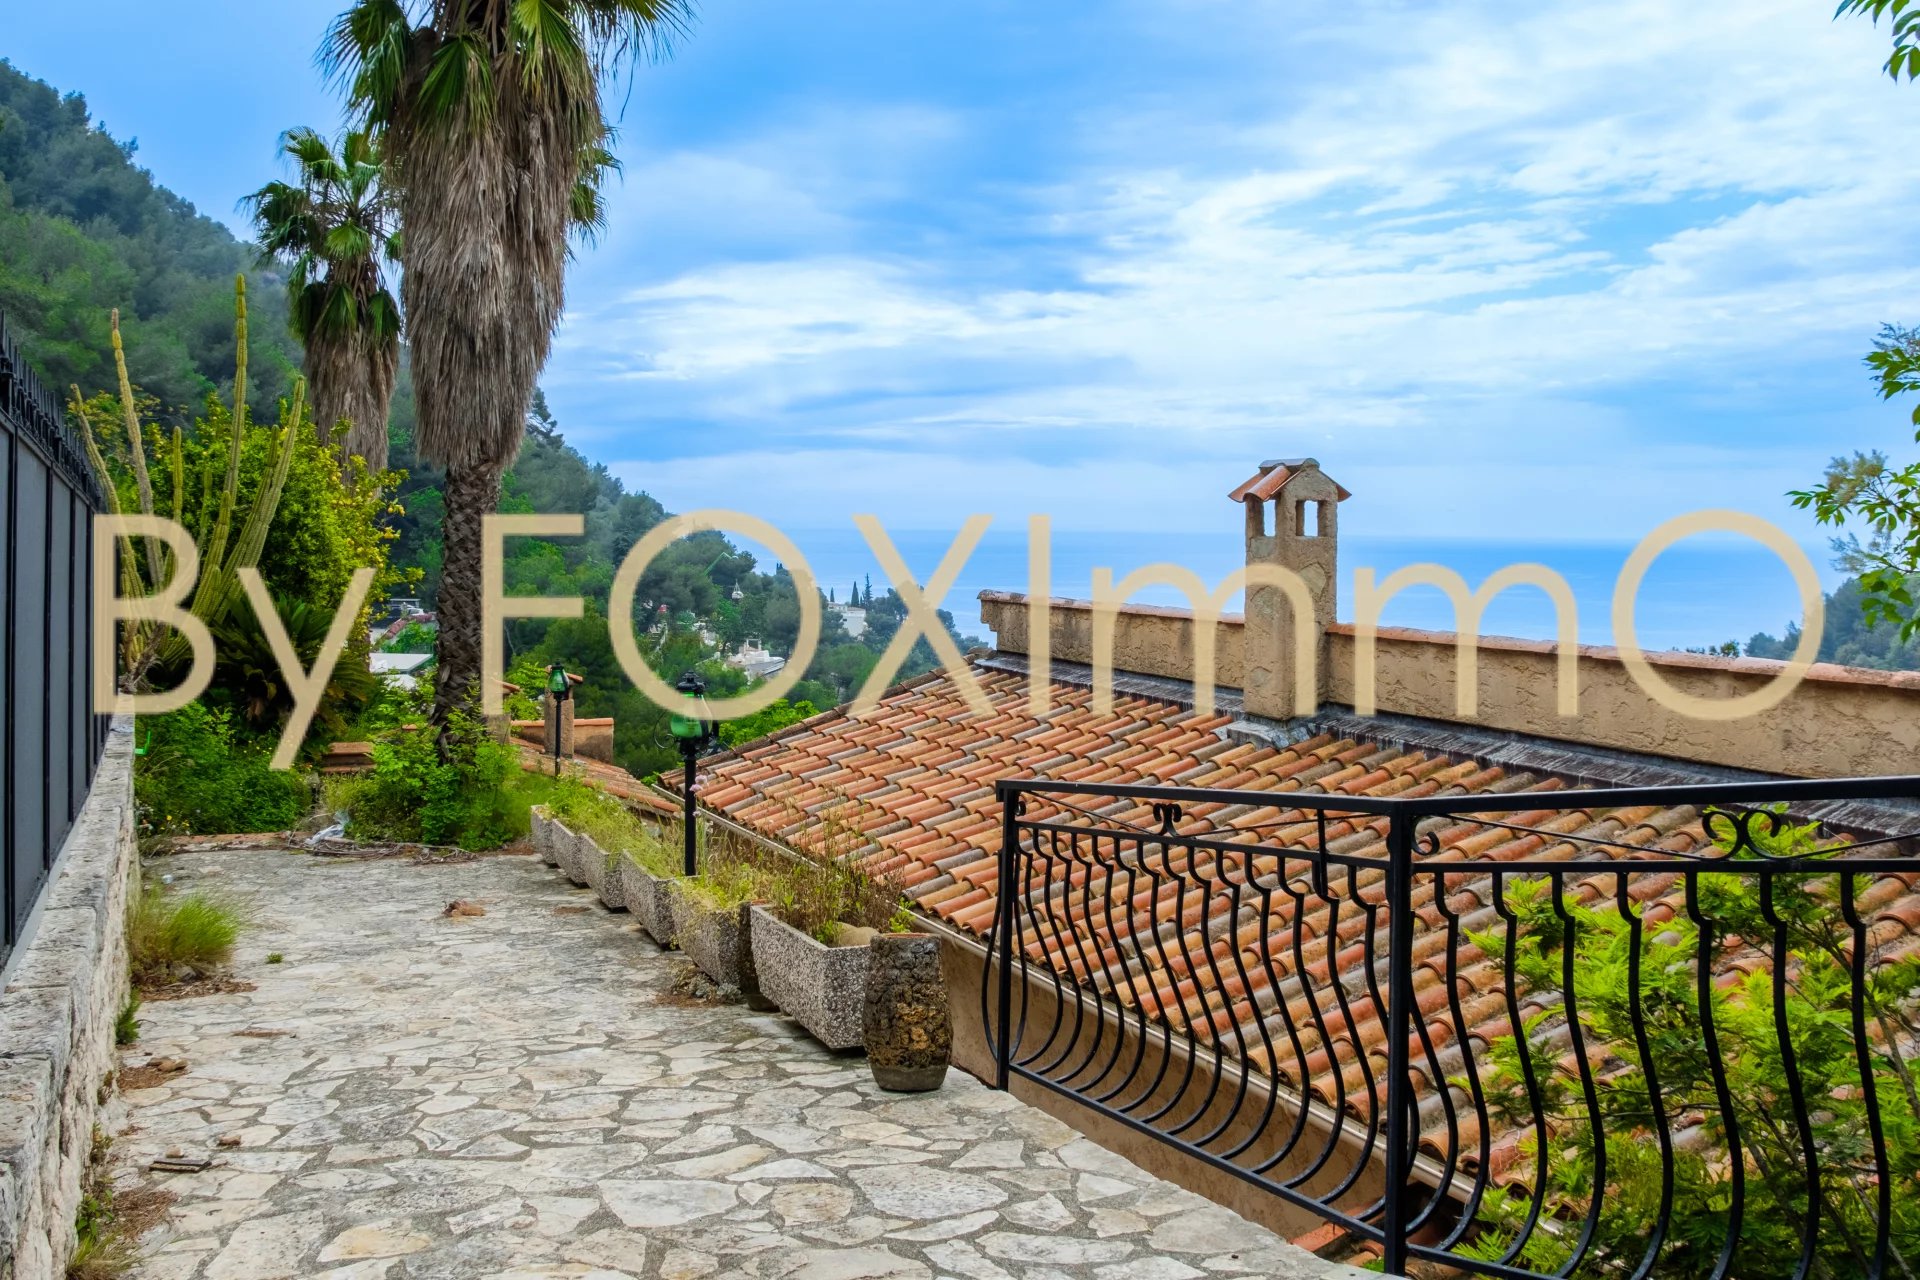 In vendita in Costa Azzurra, bella casa indipendente di 6 locali in un ambiente tranquillo, con piscina e vista ininterrotta sul mare e sulle colline